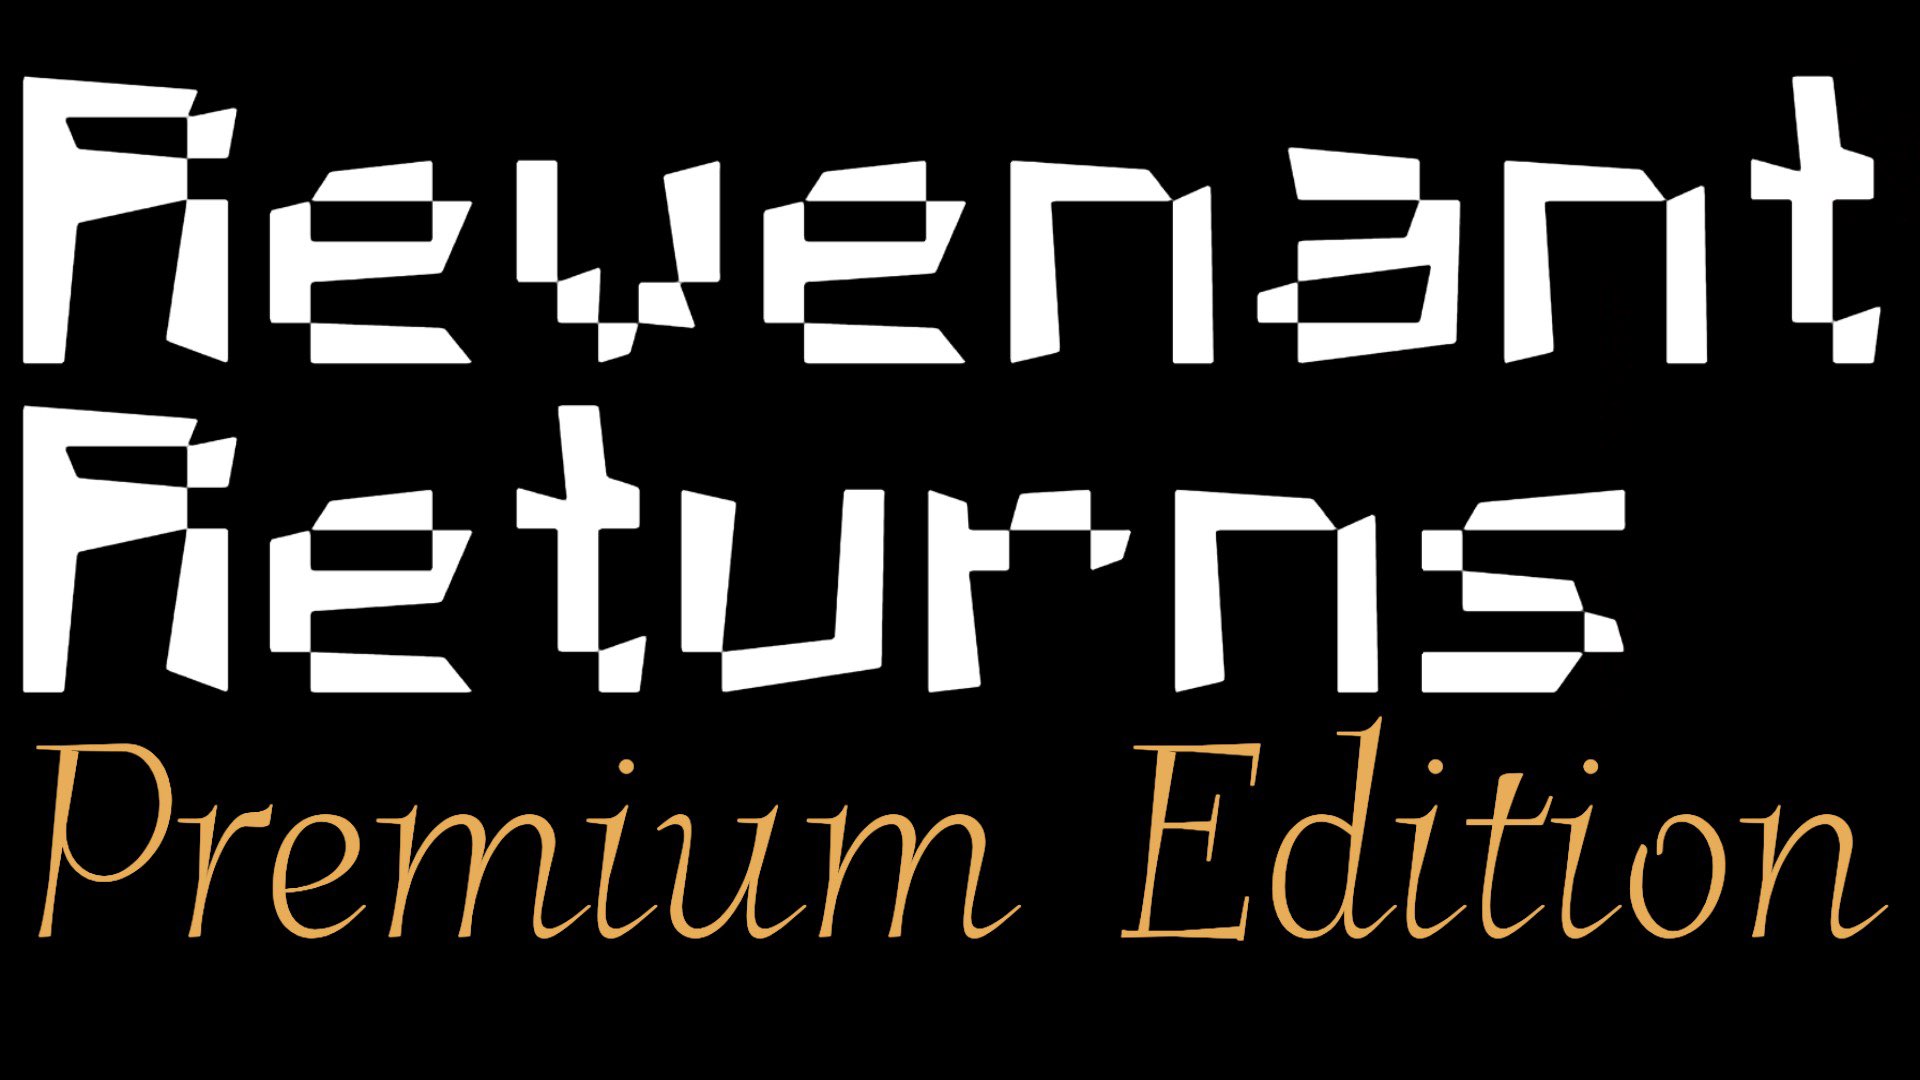 Revenant Returns - Premium Edition